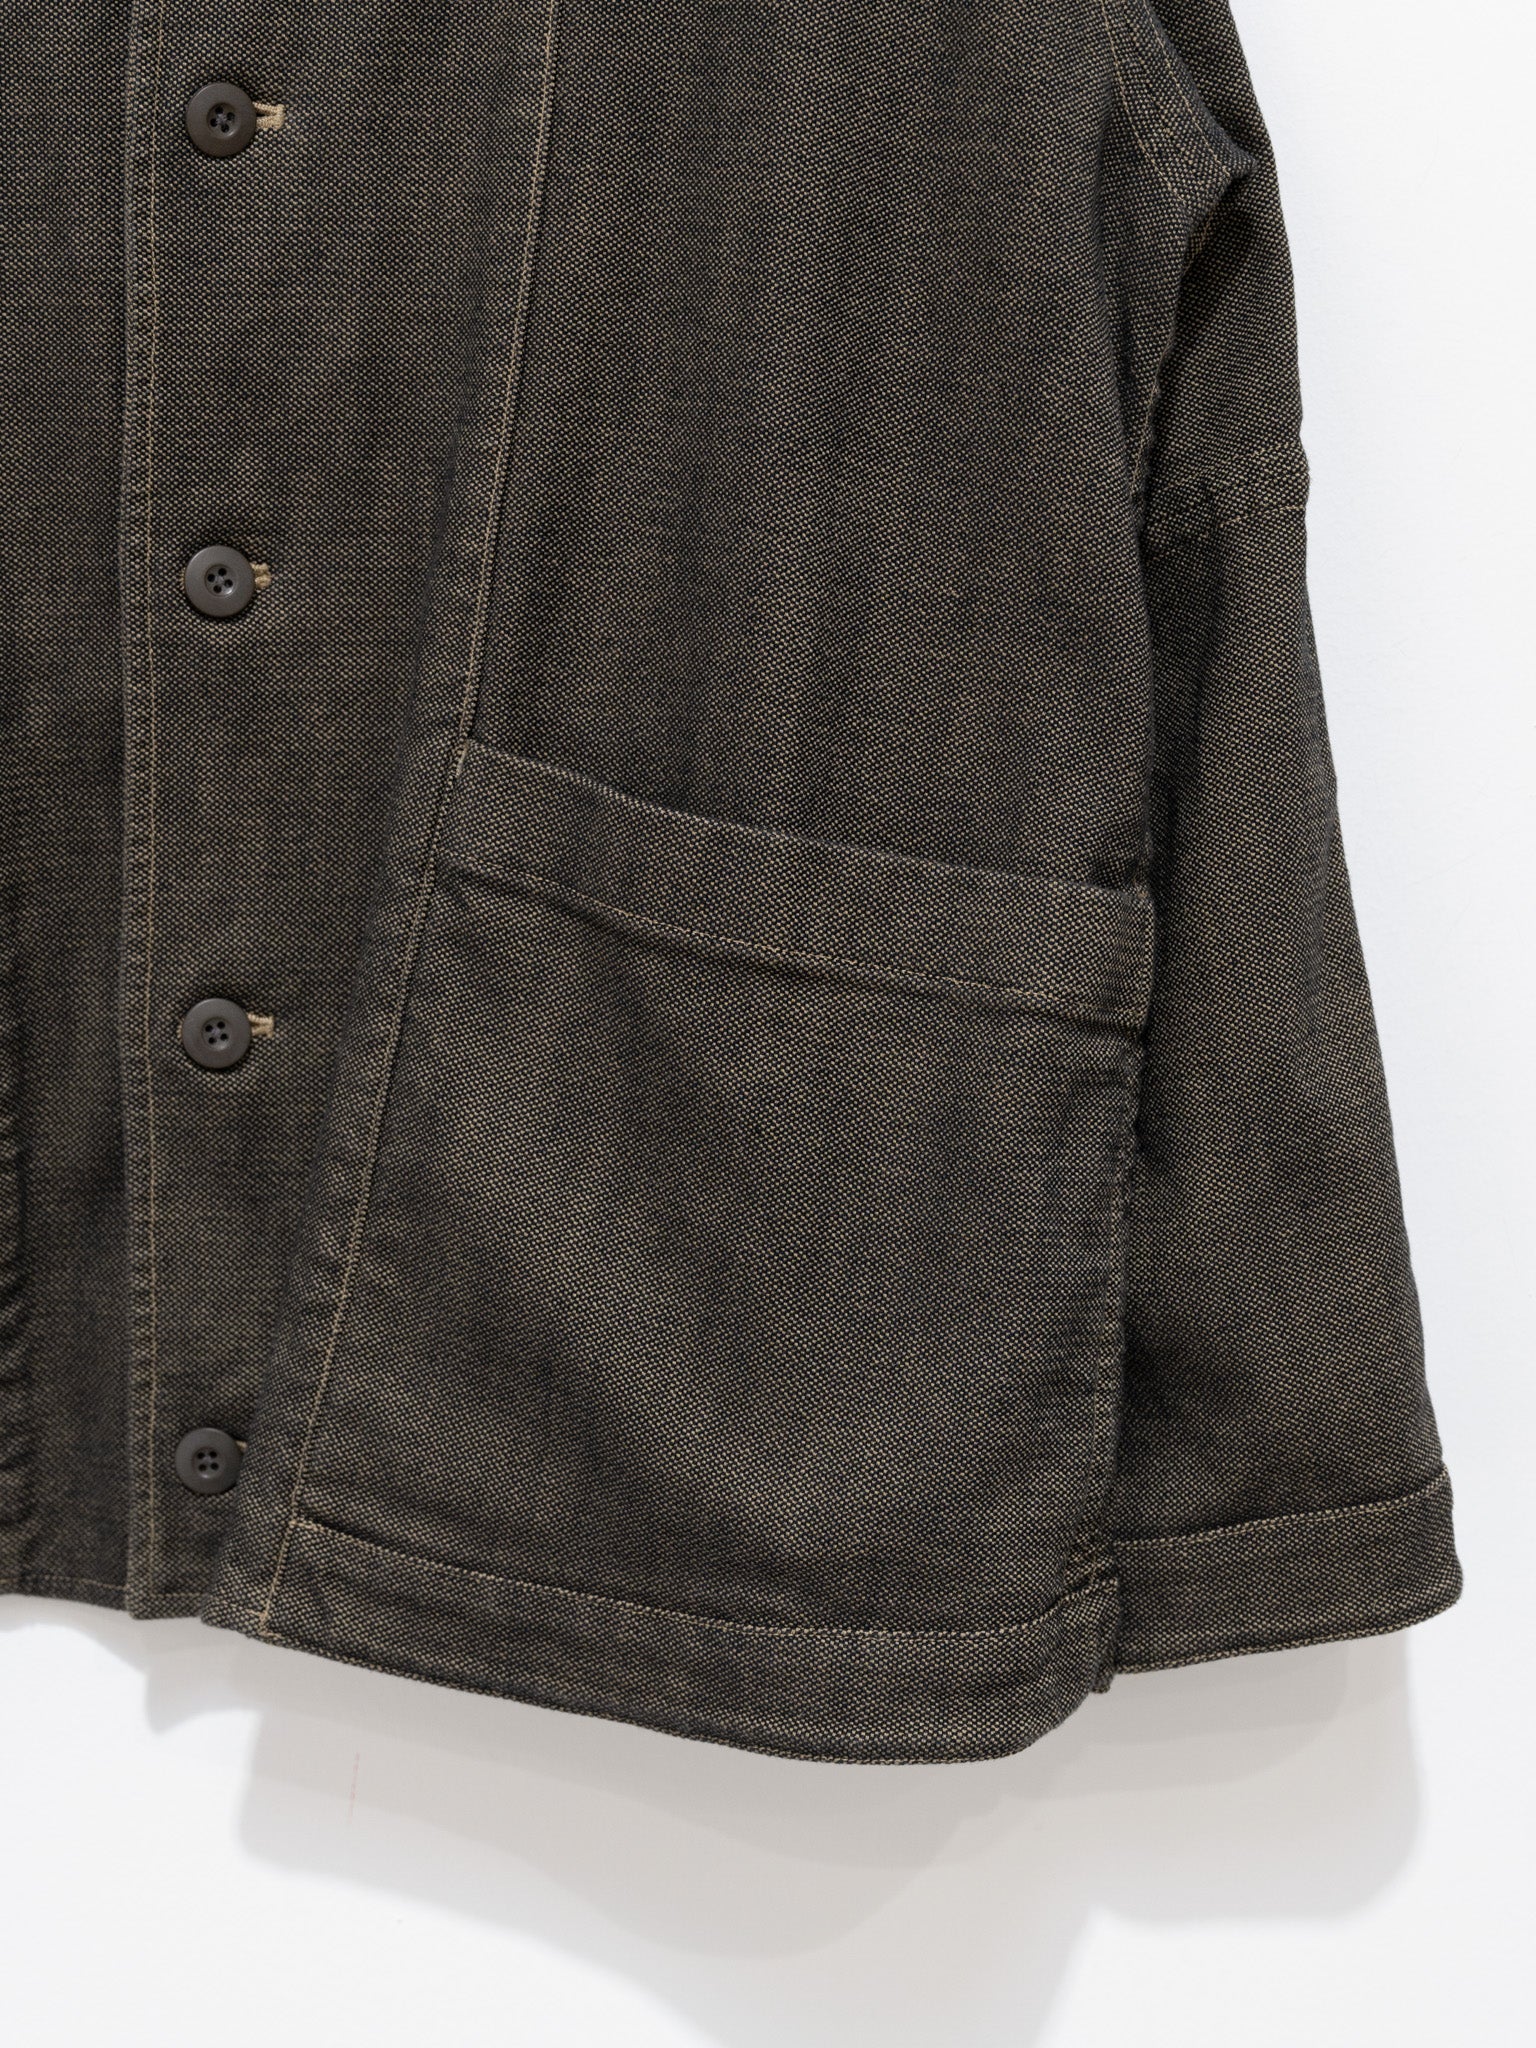 Namu Shop - ts(s) Garment Dye Oxford Reversible Jacket - Khaki